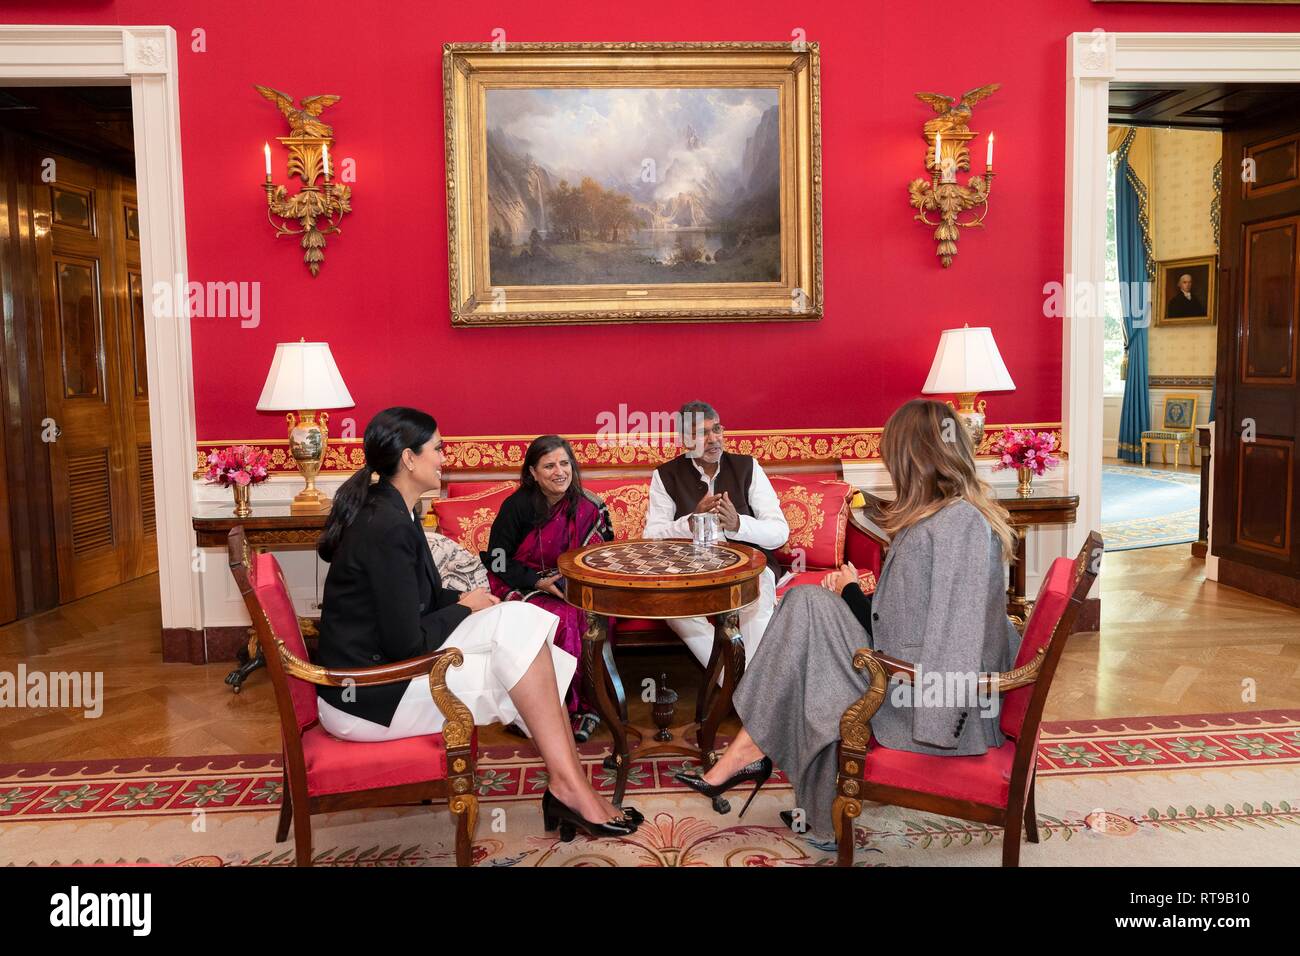 Stati Uniti La First Lady Melania Trump, a destra si incontra con i designer di moda Rachel Roy, sinistra, Premio Nobel per la pace Kailash Satyarthi e sua moglie Sumedha Kailash nella sala rossa della Casa Bianca Febbraio 25, 2019 a Washington, DC. La First Lady si incontra con il gruppo per portare attenzione al lavoro minorile e la schiavitù negli Stati Uniti e all'estero. Foto Stock